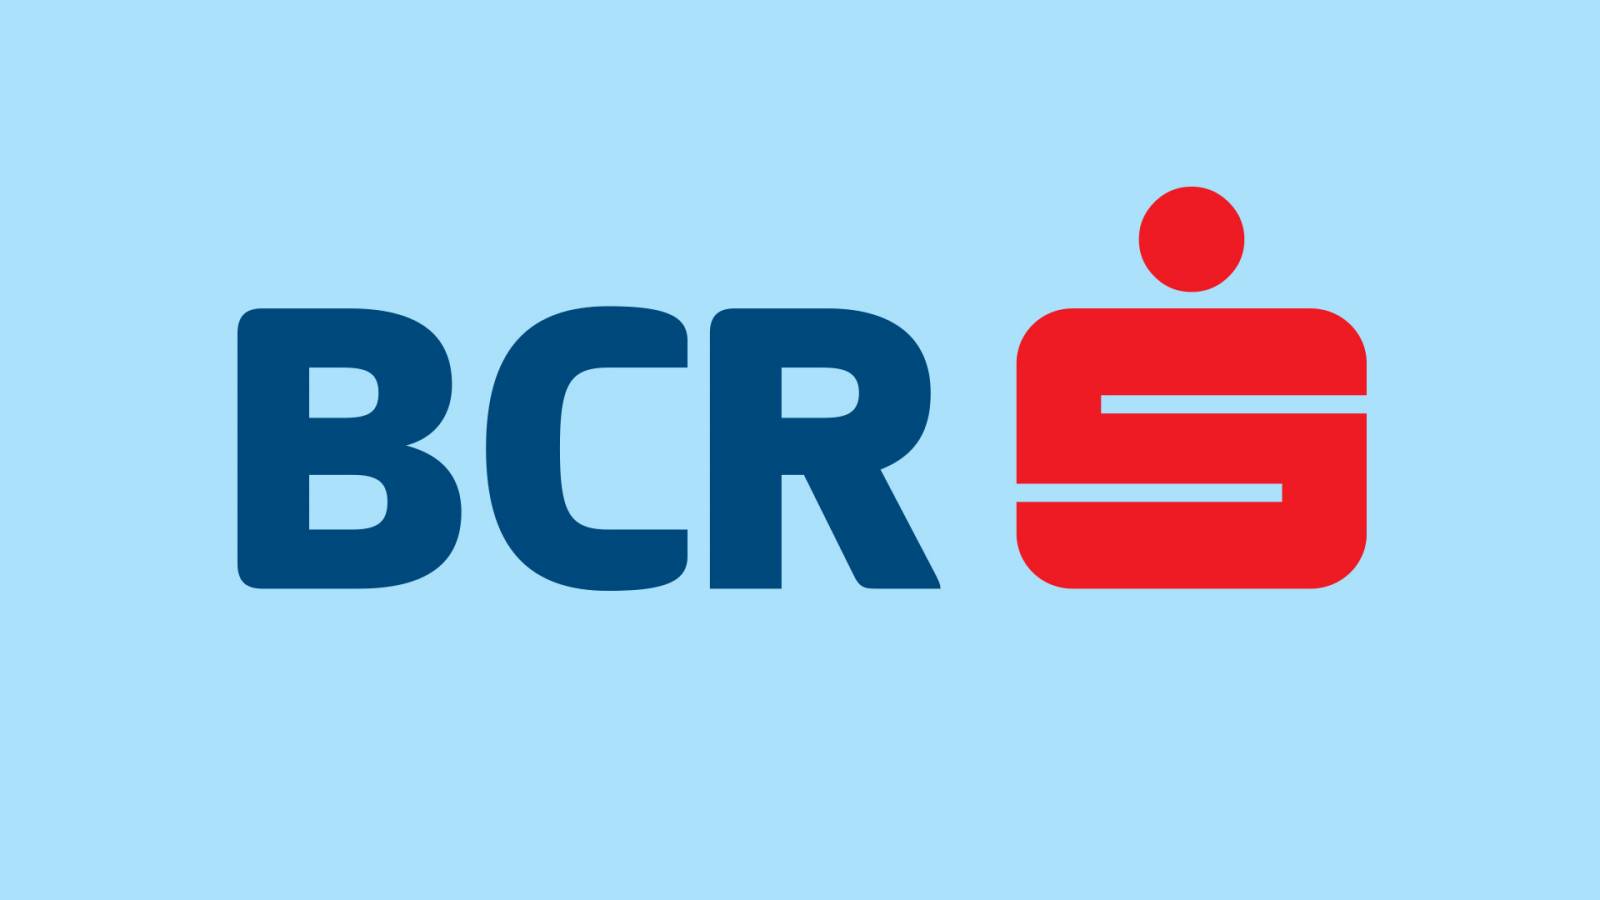 BCR Romania suspendari